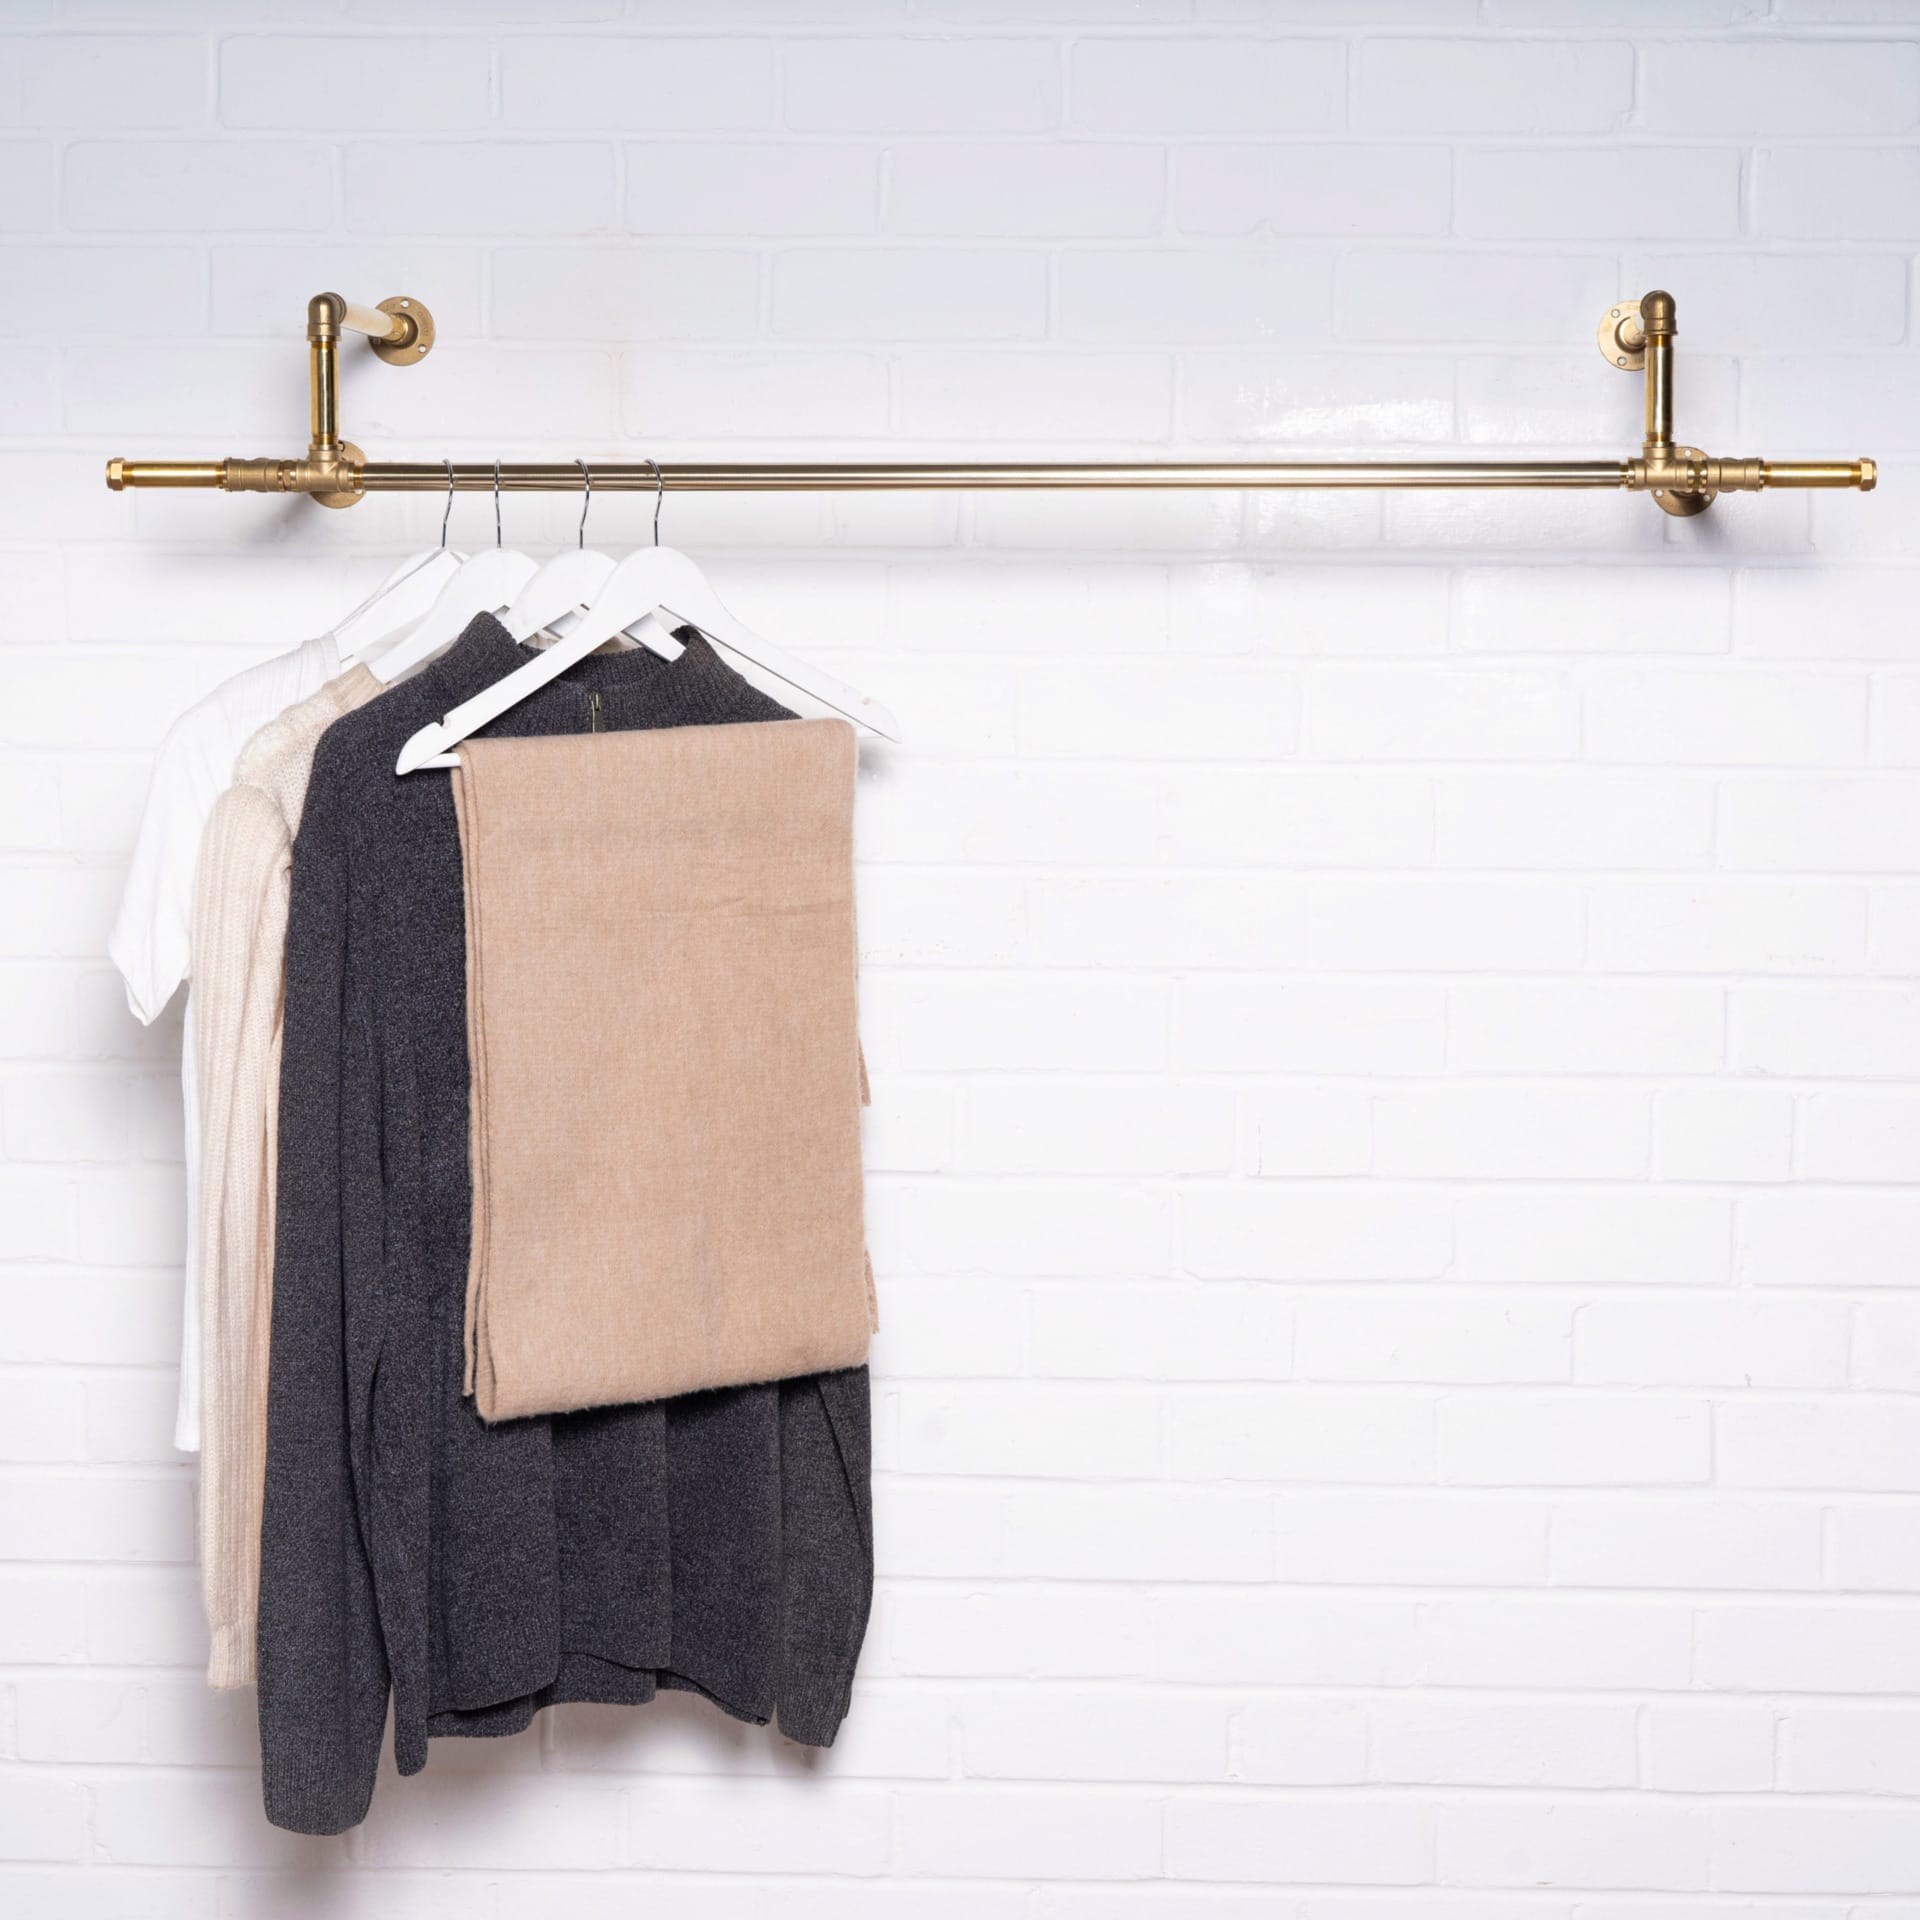 Solid Brass Corner Bend Clothes Rail - Pipe Dream Furniture